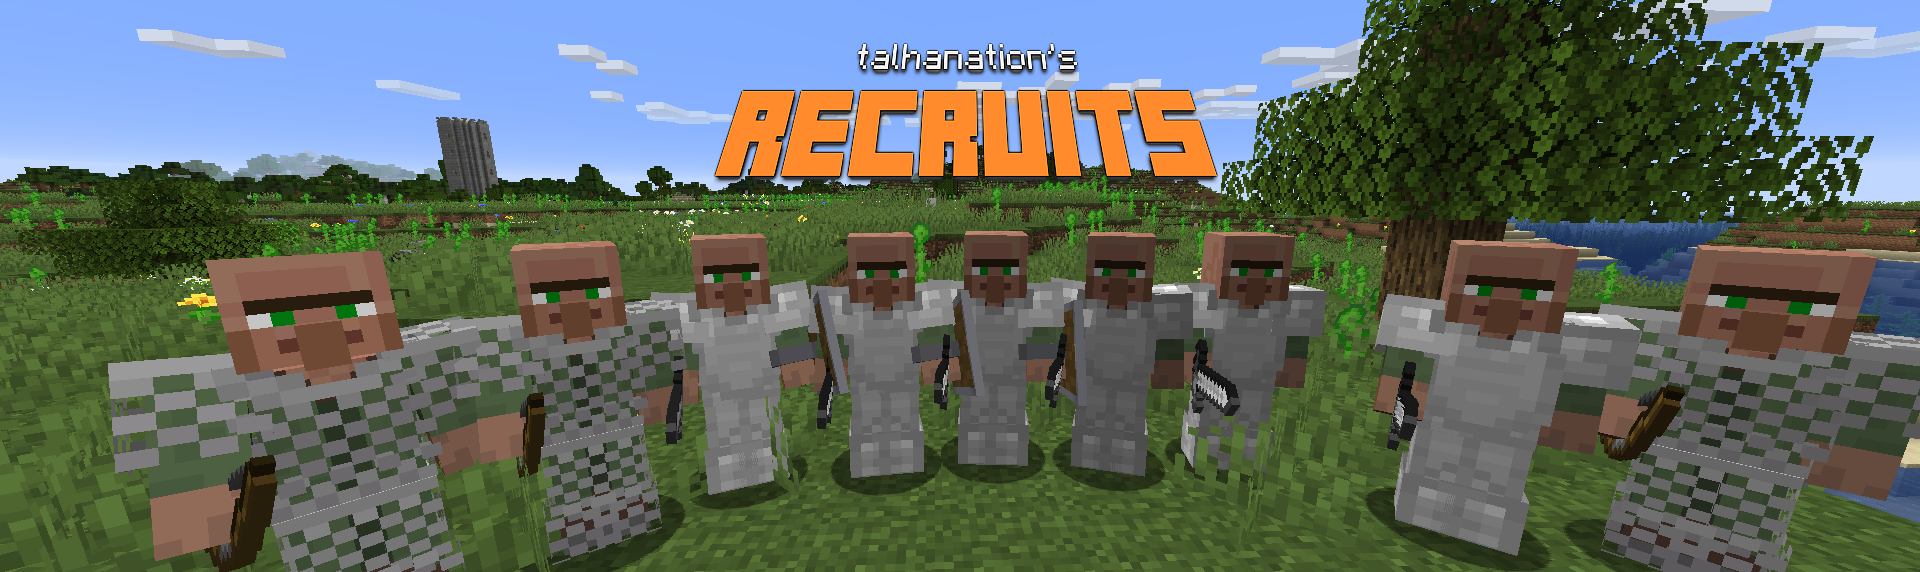 Villager Recruits screenshot 1